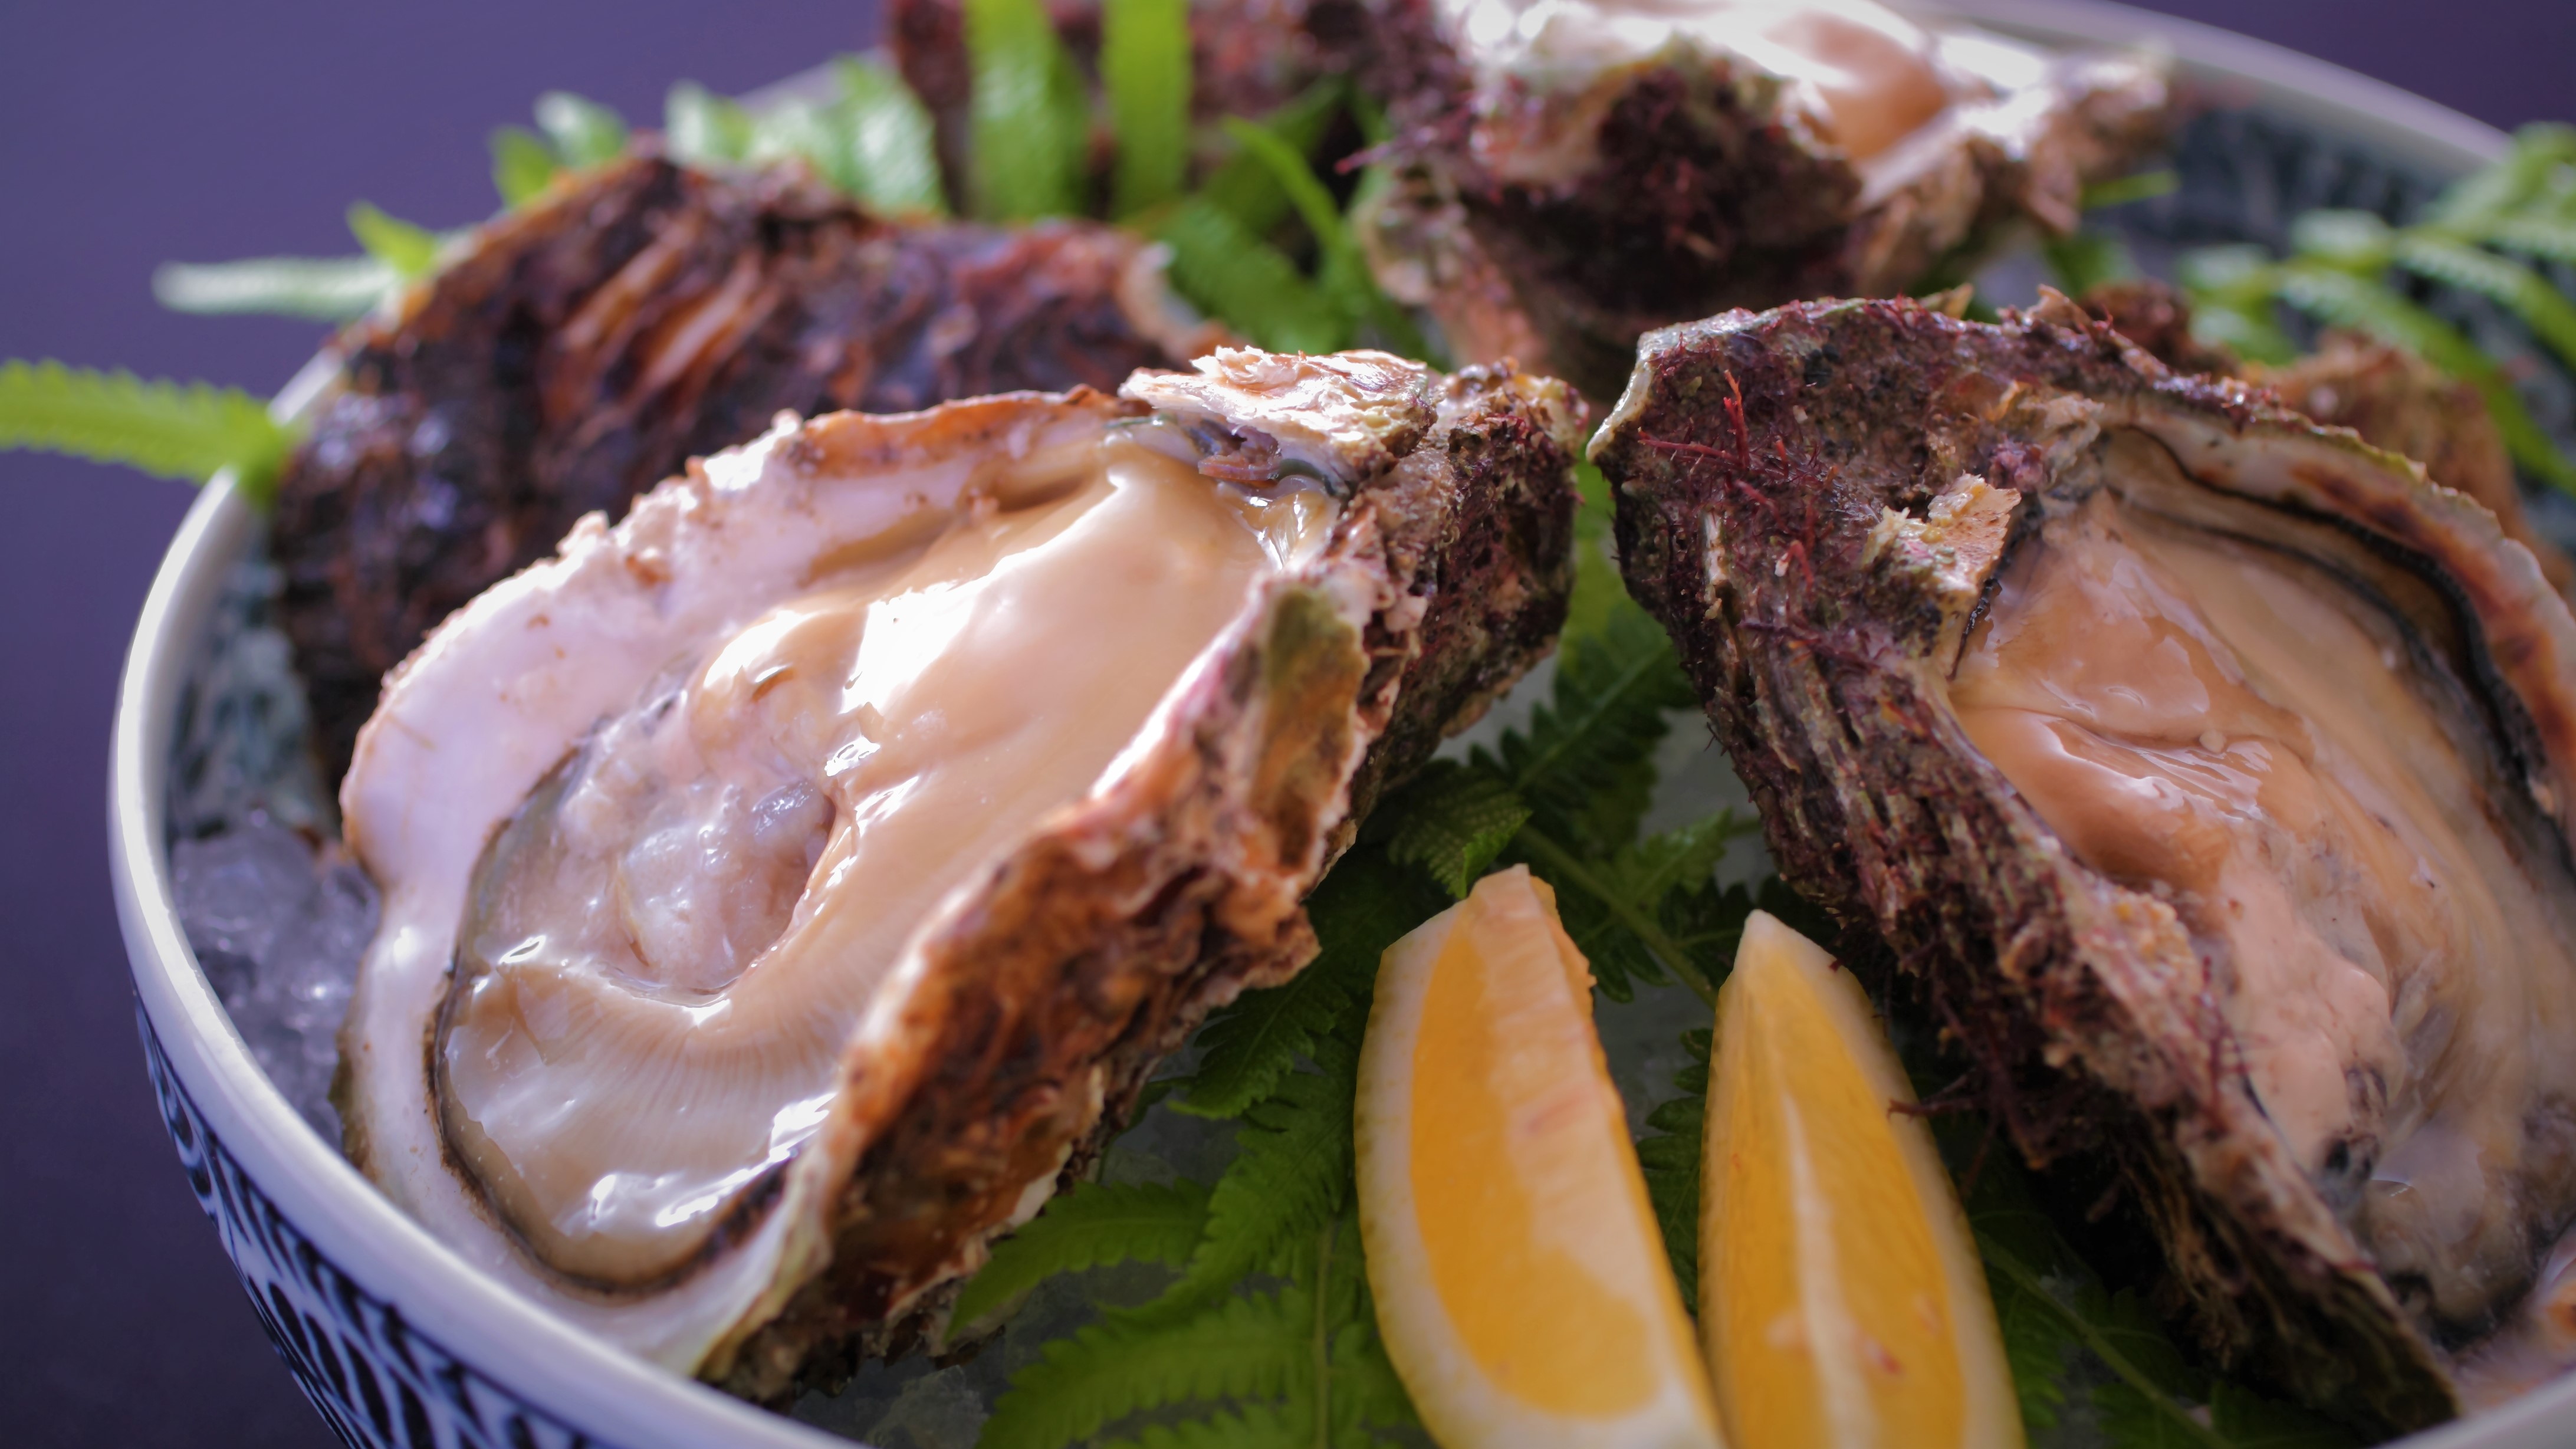 【夏の味覚の王様】「海のミルク」と称される大粒でプリプリな岩牡蠣は濃厚な甘さと旨味です。